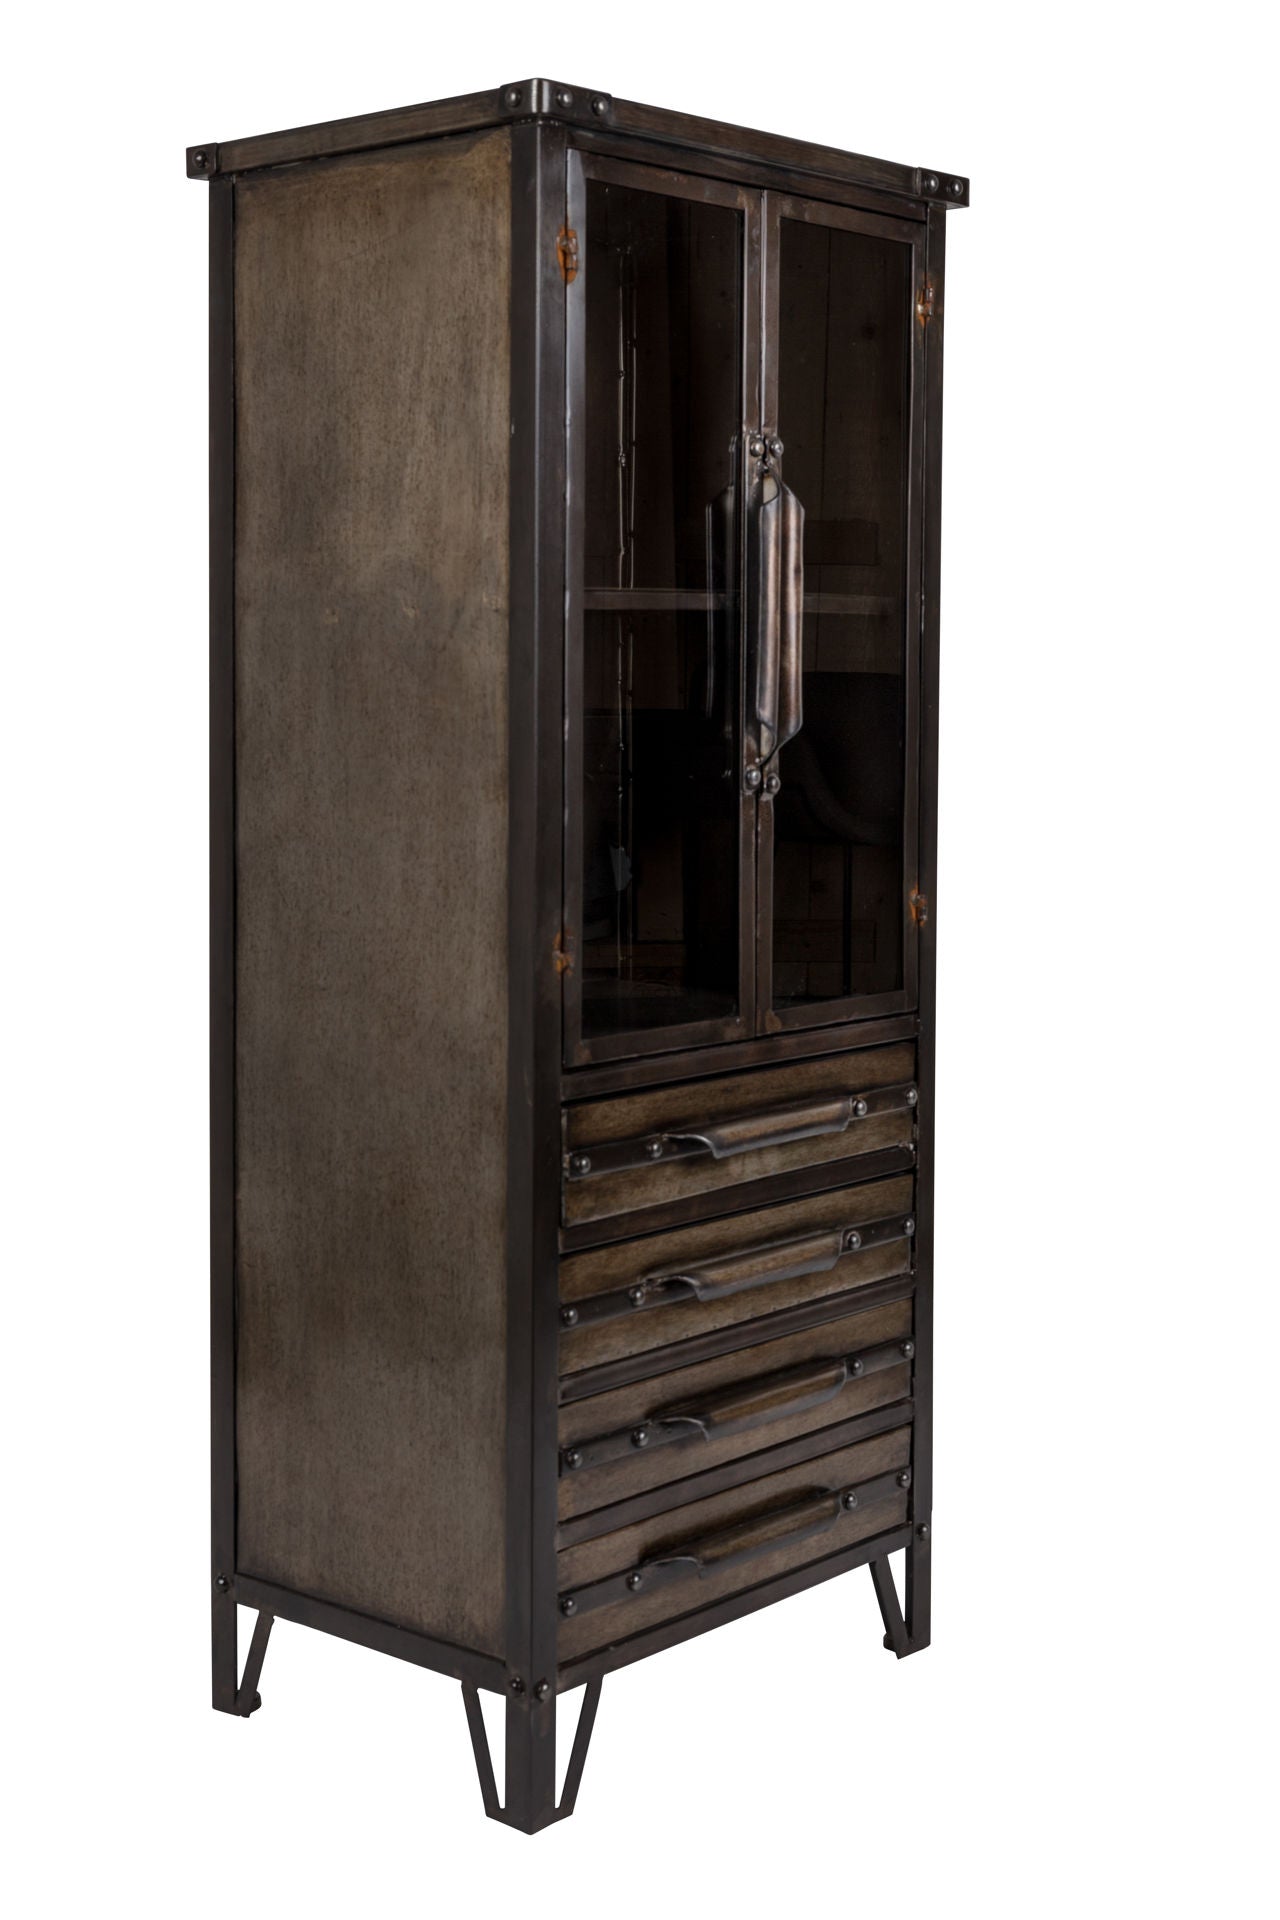 Nancy's Archdale Cabinet - Industriel - Noir, Métal, Marron - Fer, Verre - 34,5 cm x 49 cm x 35 cm